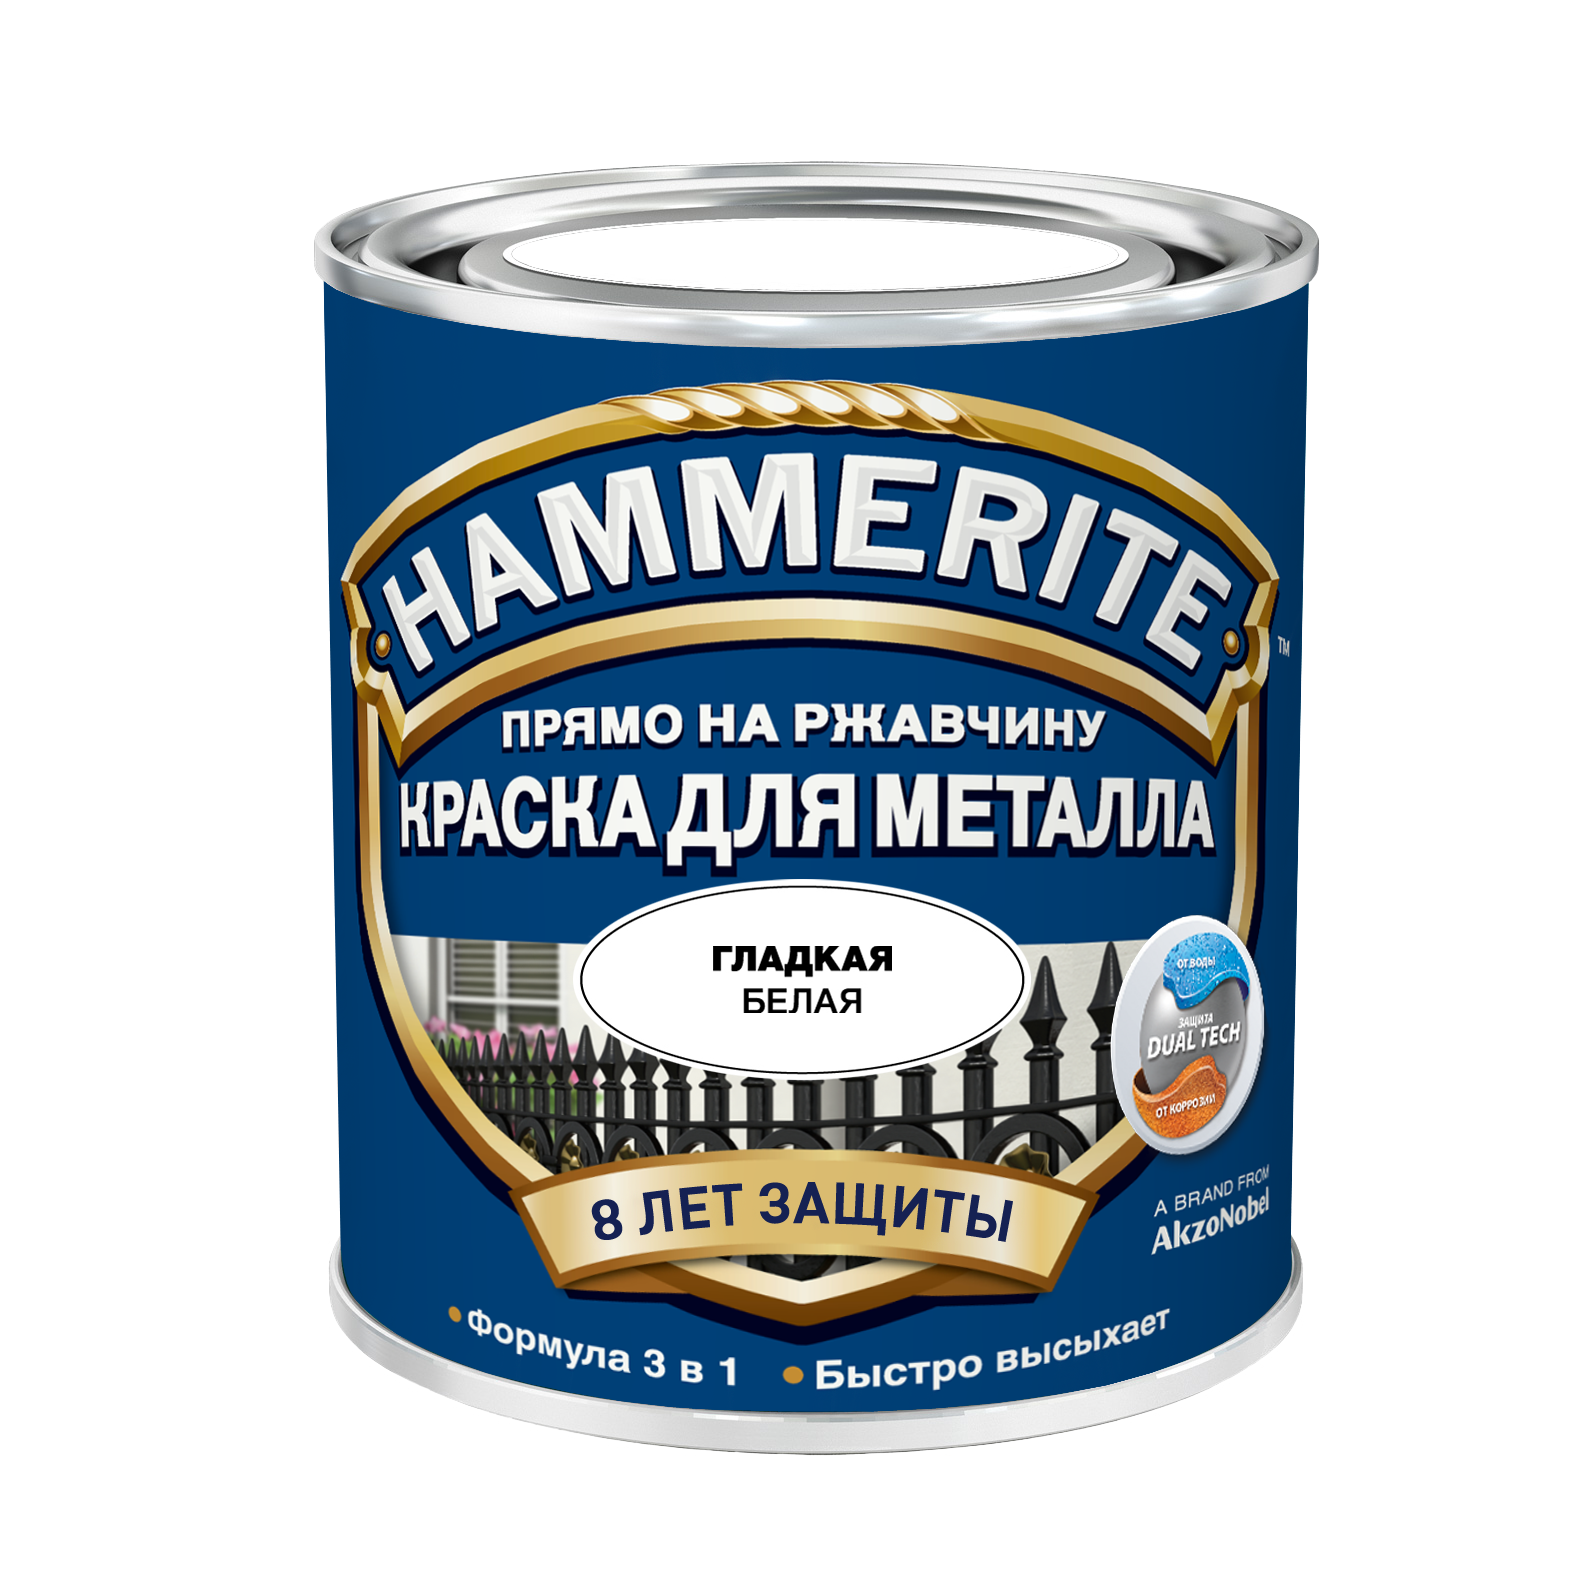 Грунт-эмаль 3 в 1 Хаммерайт/Hammerite глянцевая купить Коломна, цена, отзывы